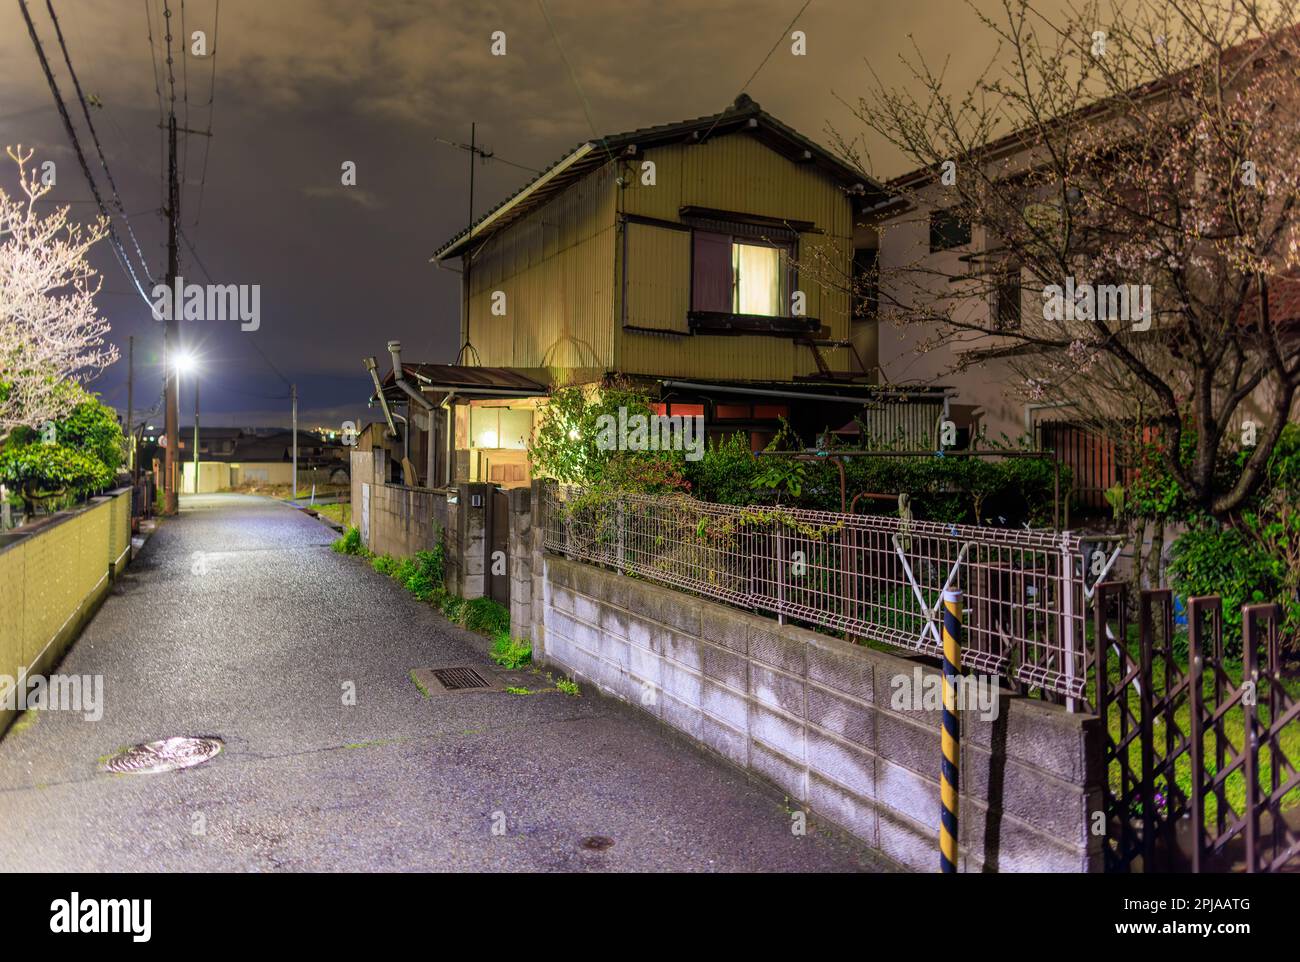 Lumières dans la maison japonaise sur une rue calme dans le quartier résidentiel la nuit Banque D'Images